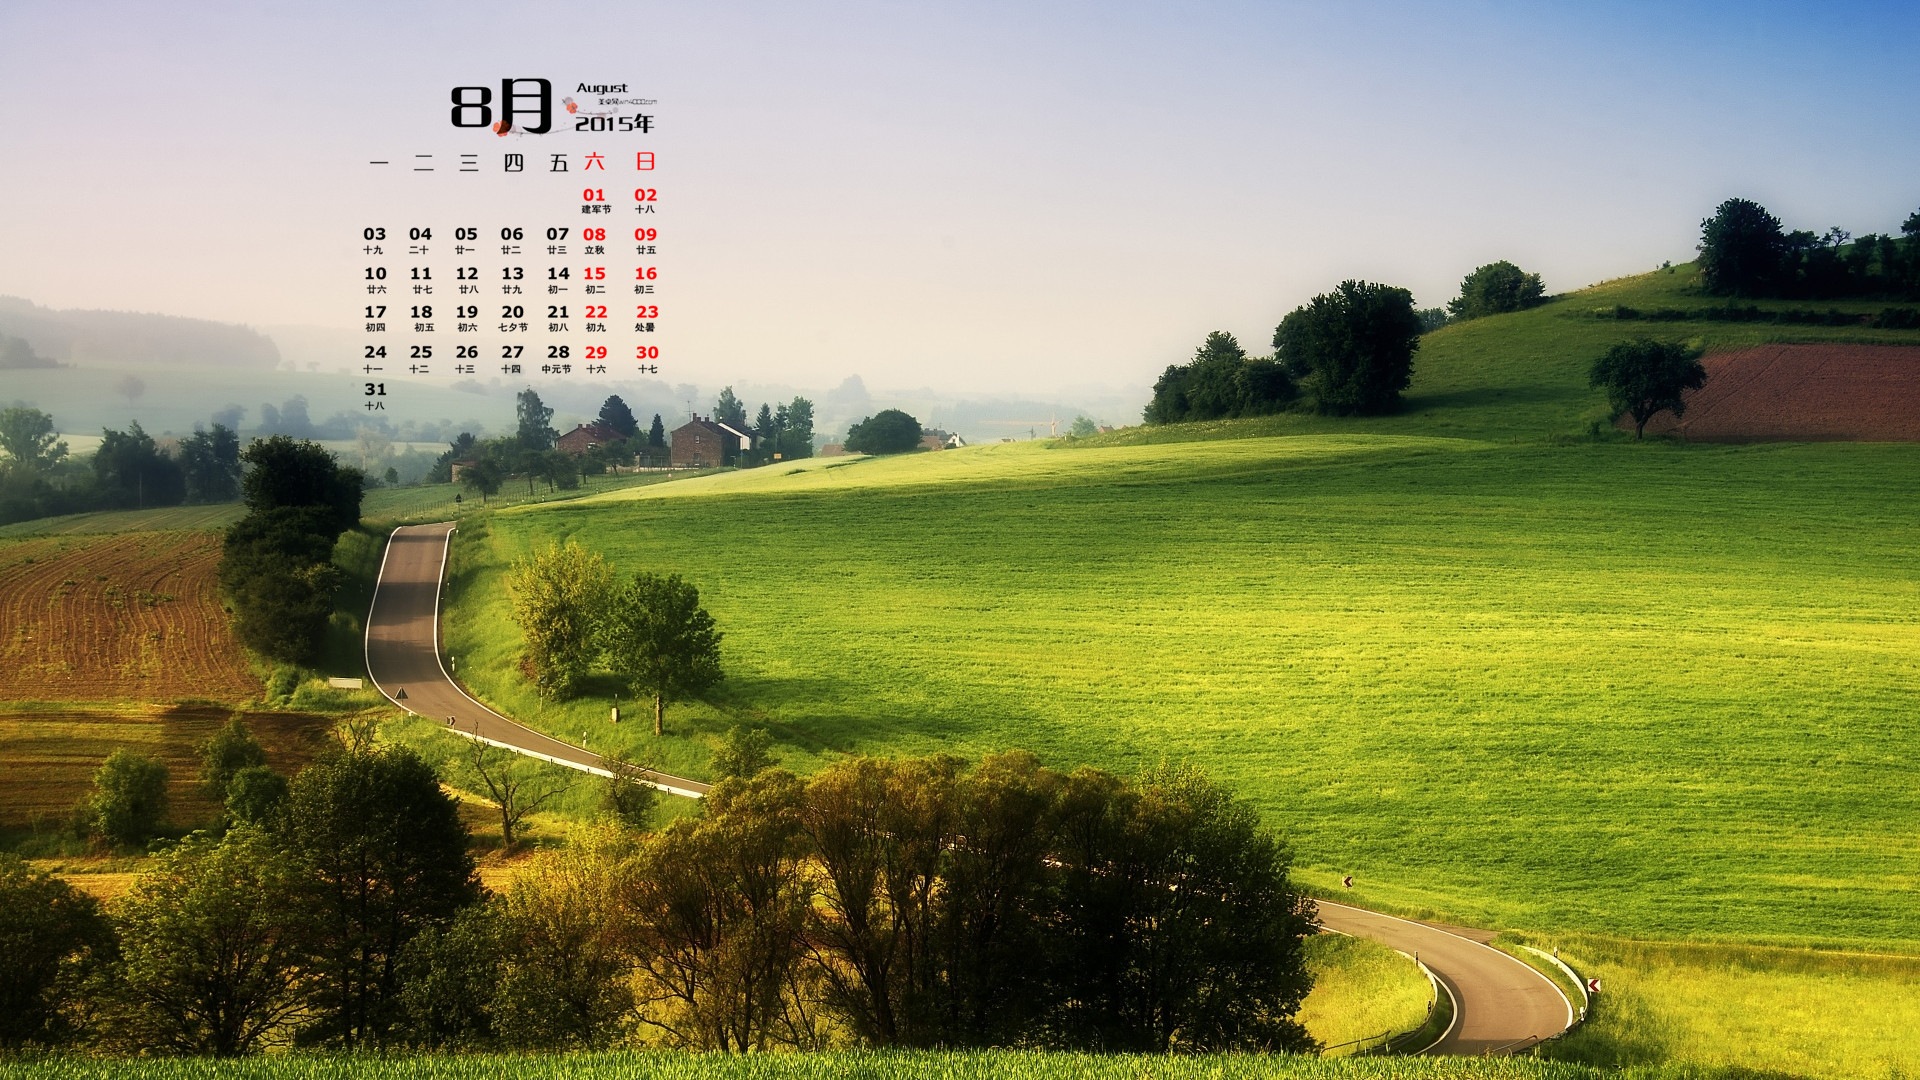 August 2015 calendar wallpaper (1) #1 - 1920x1080